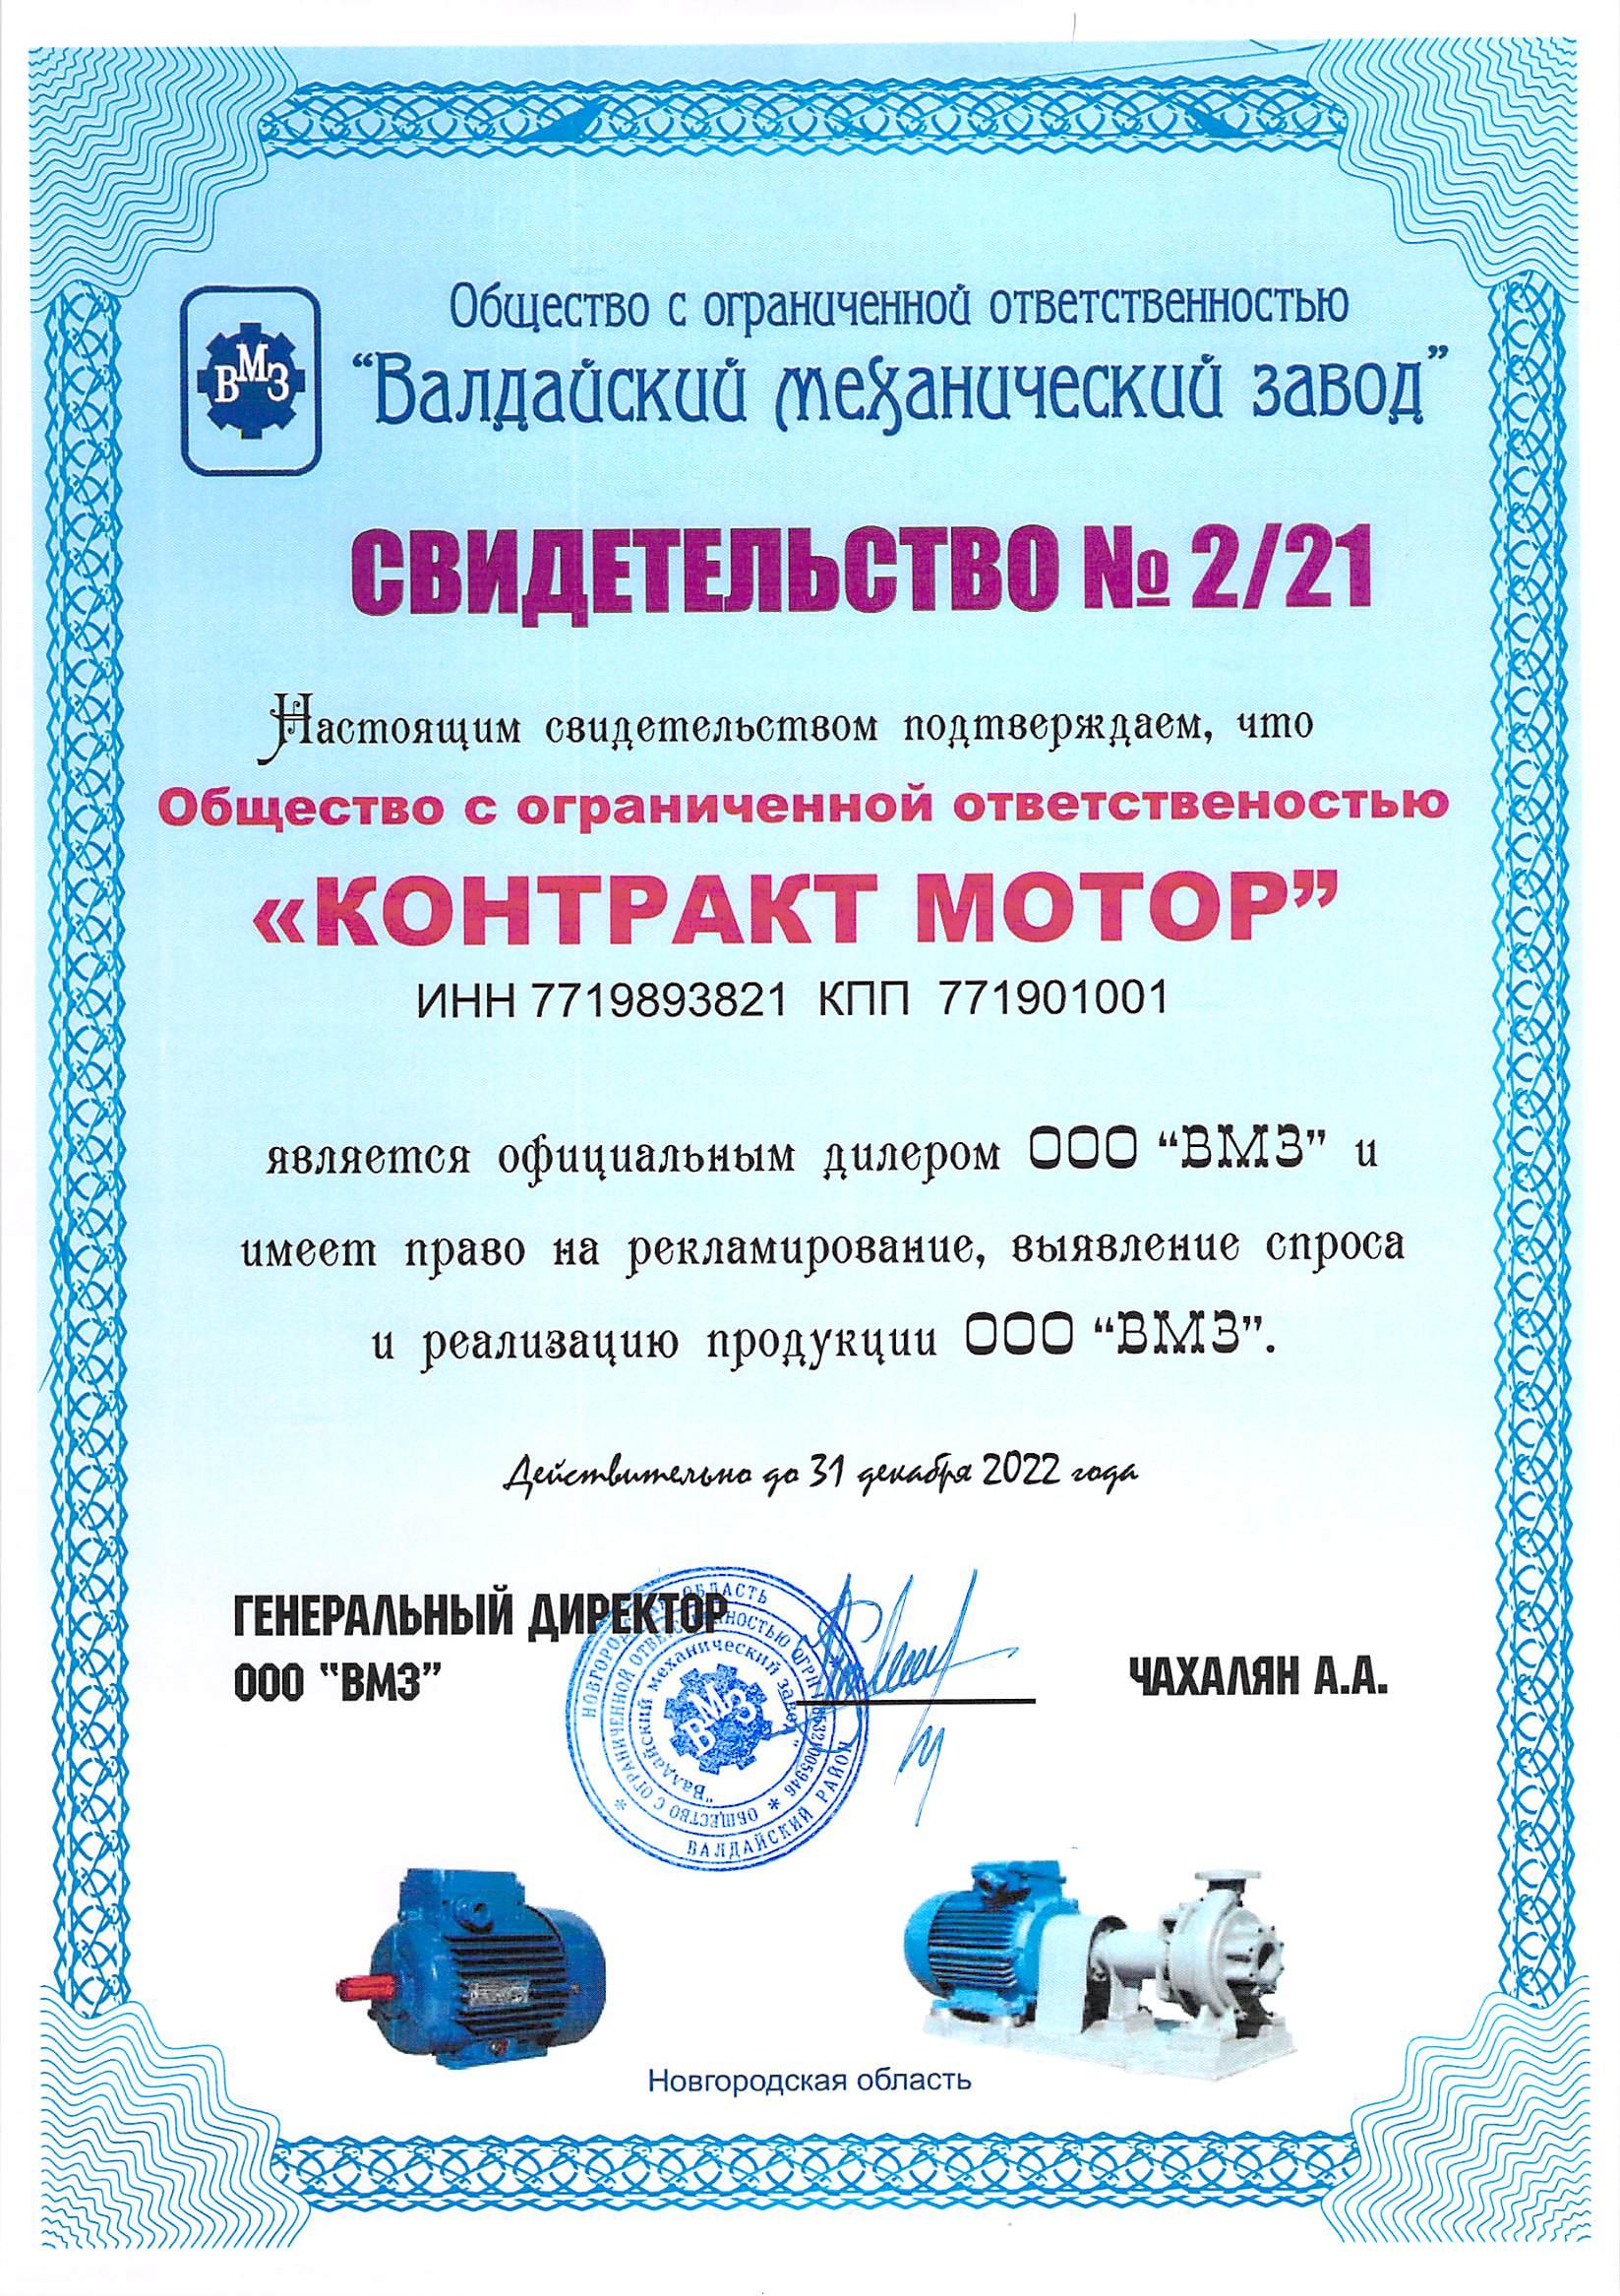 Сертификат Валдайский механический завод